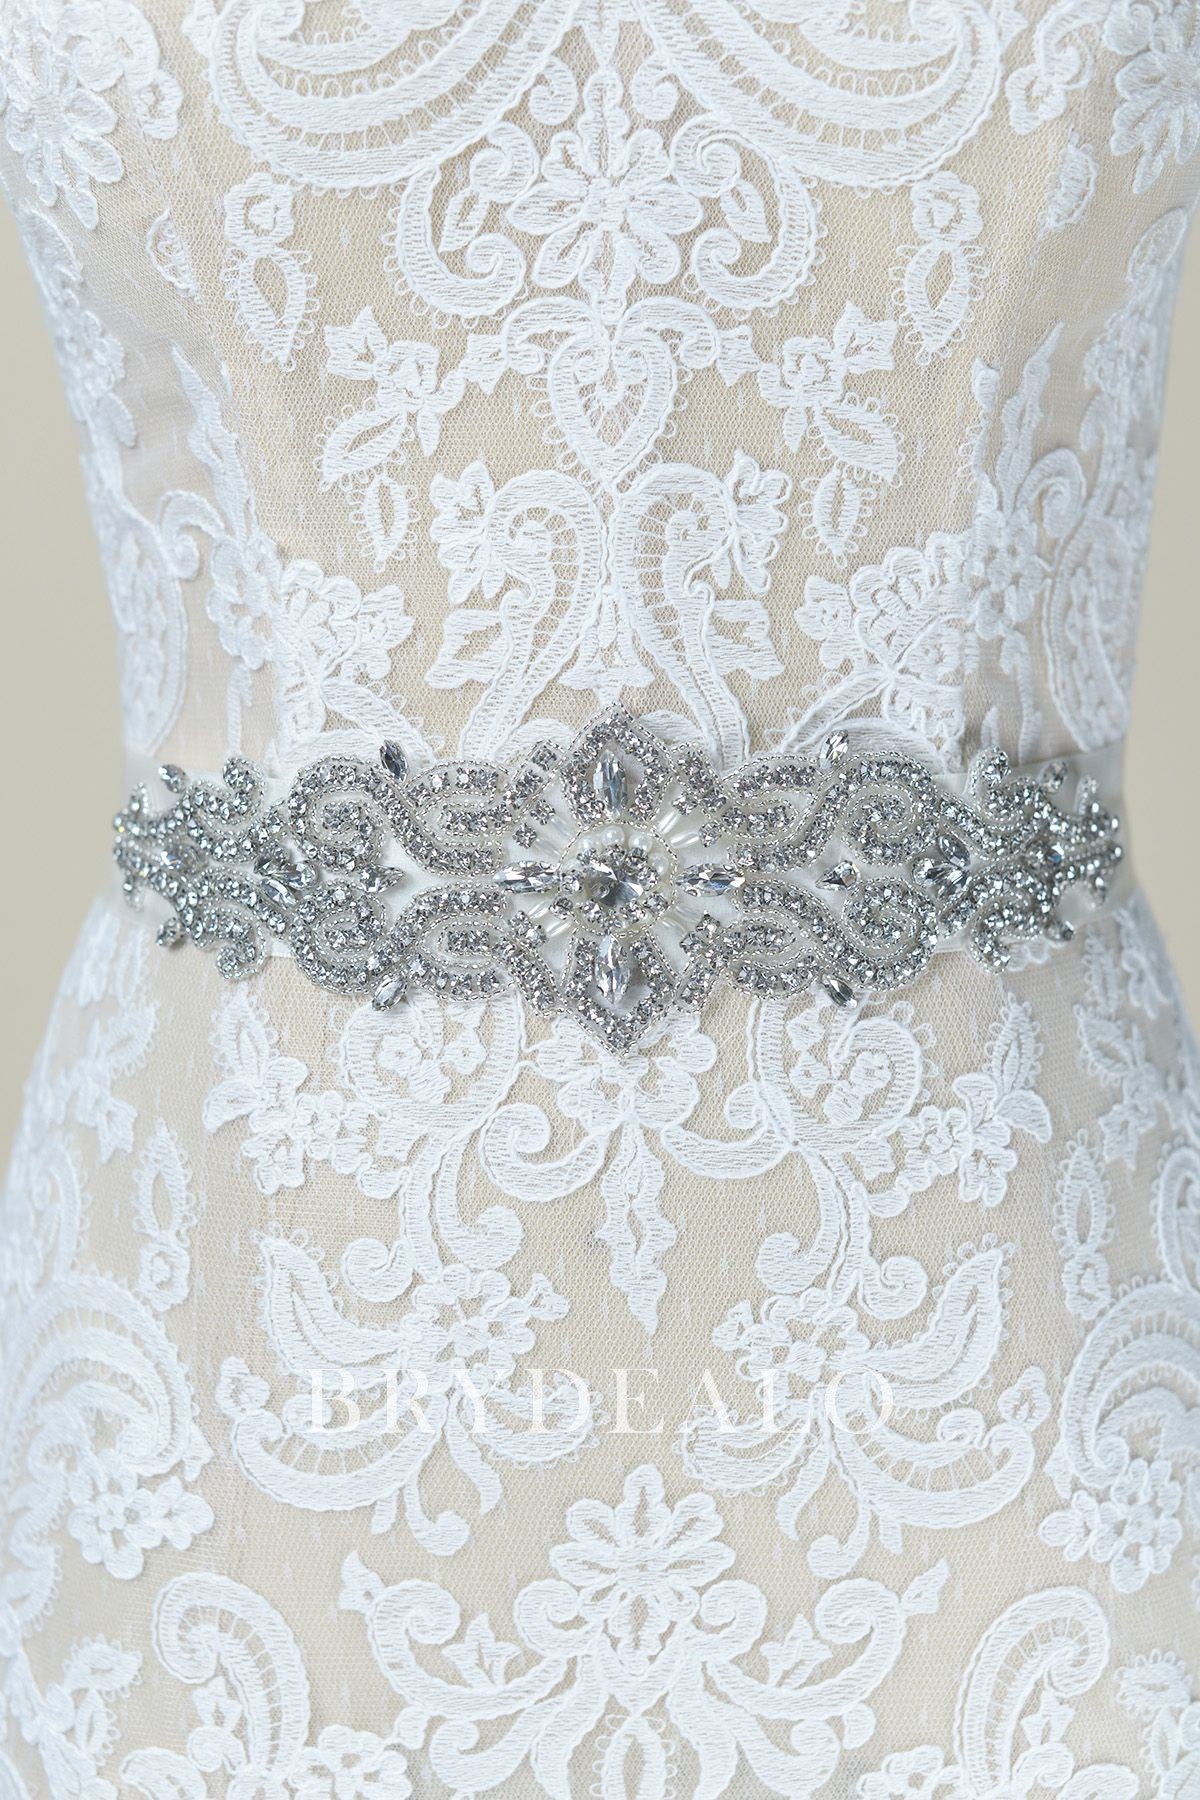 Luxurious Rhinestones Pearls Bridal Sash